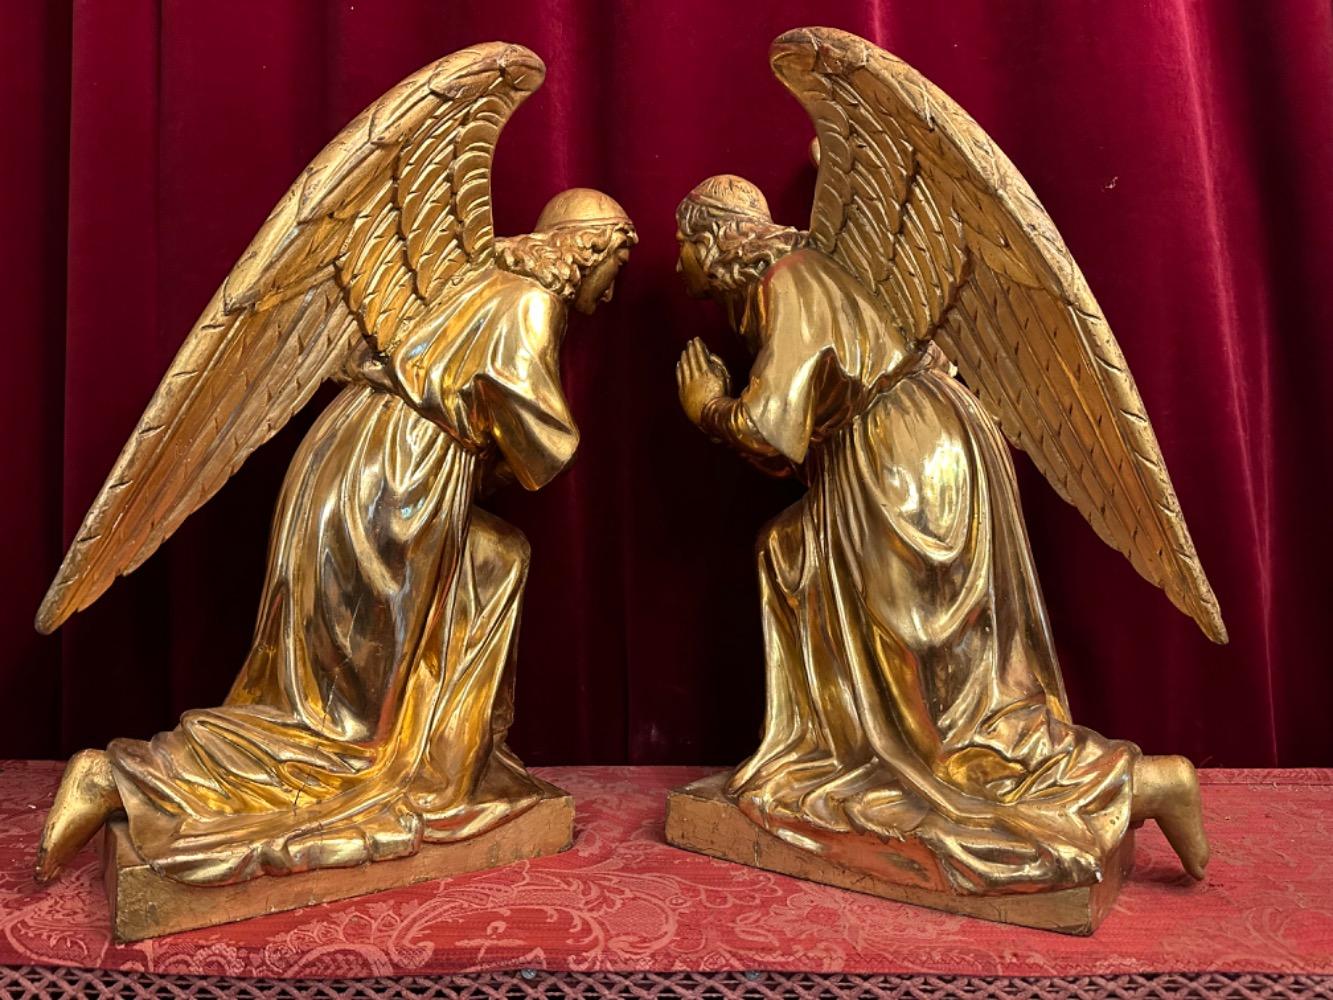 Pair Baroque - Style Kneeling Angels